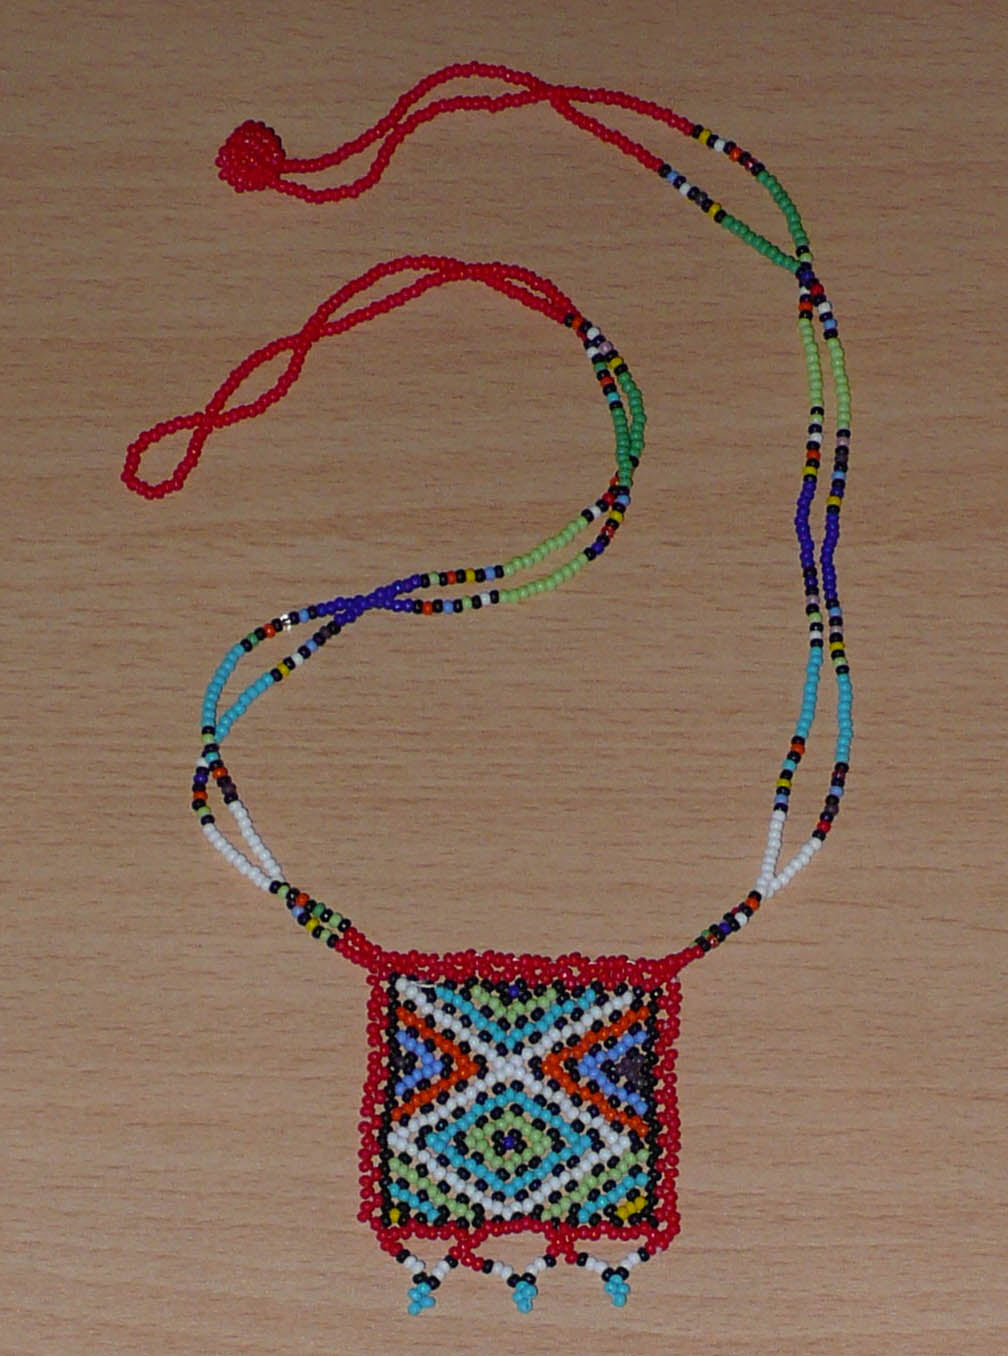 Collier africain composé de perles de rocaille rouges agrémenté d'un pendentif carré aux motifs multicolores zoulous. Il mesure 27,5 cm en partant de la nuque jusqu'à la base du pendentif. Le pendentif mesure 5,5 cm sur 4,5 cm. Le collier s'attache avec un fermoir à boule. Timeless Fineries